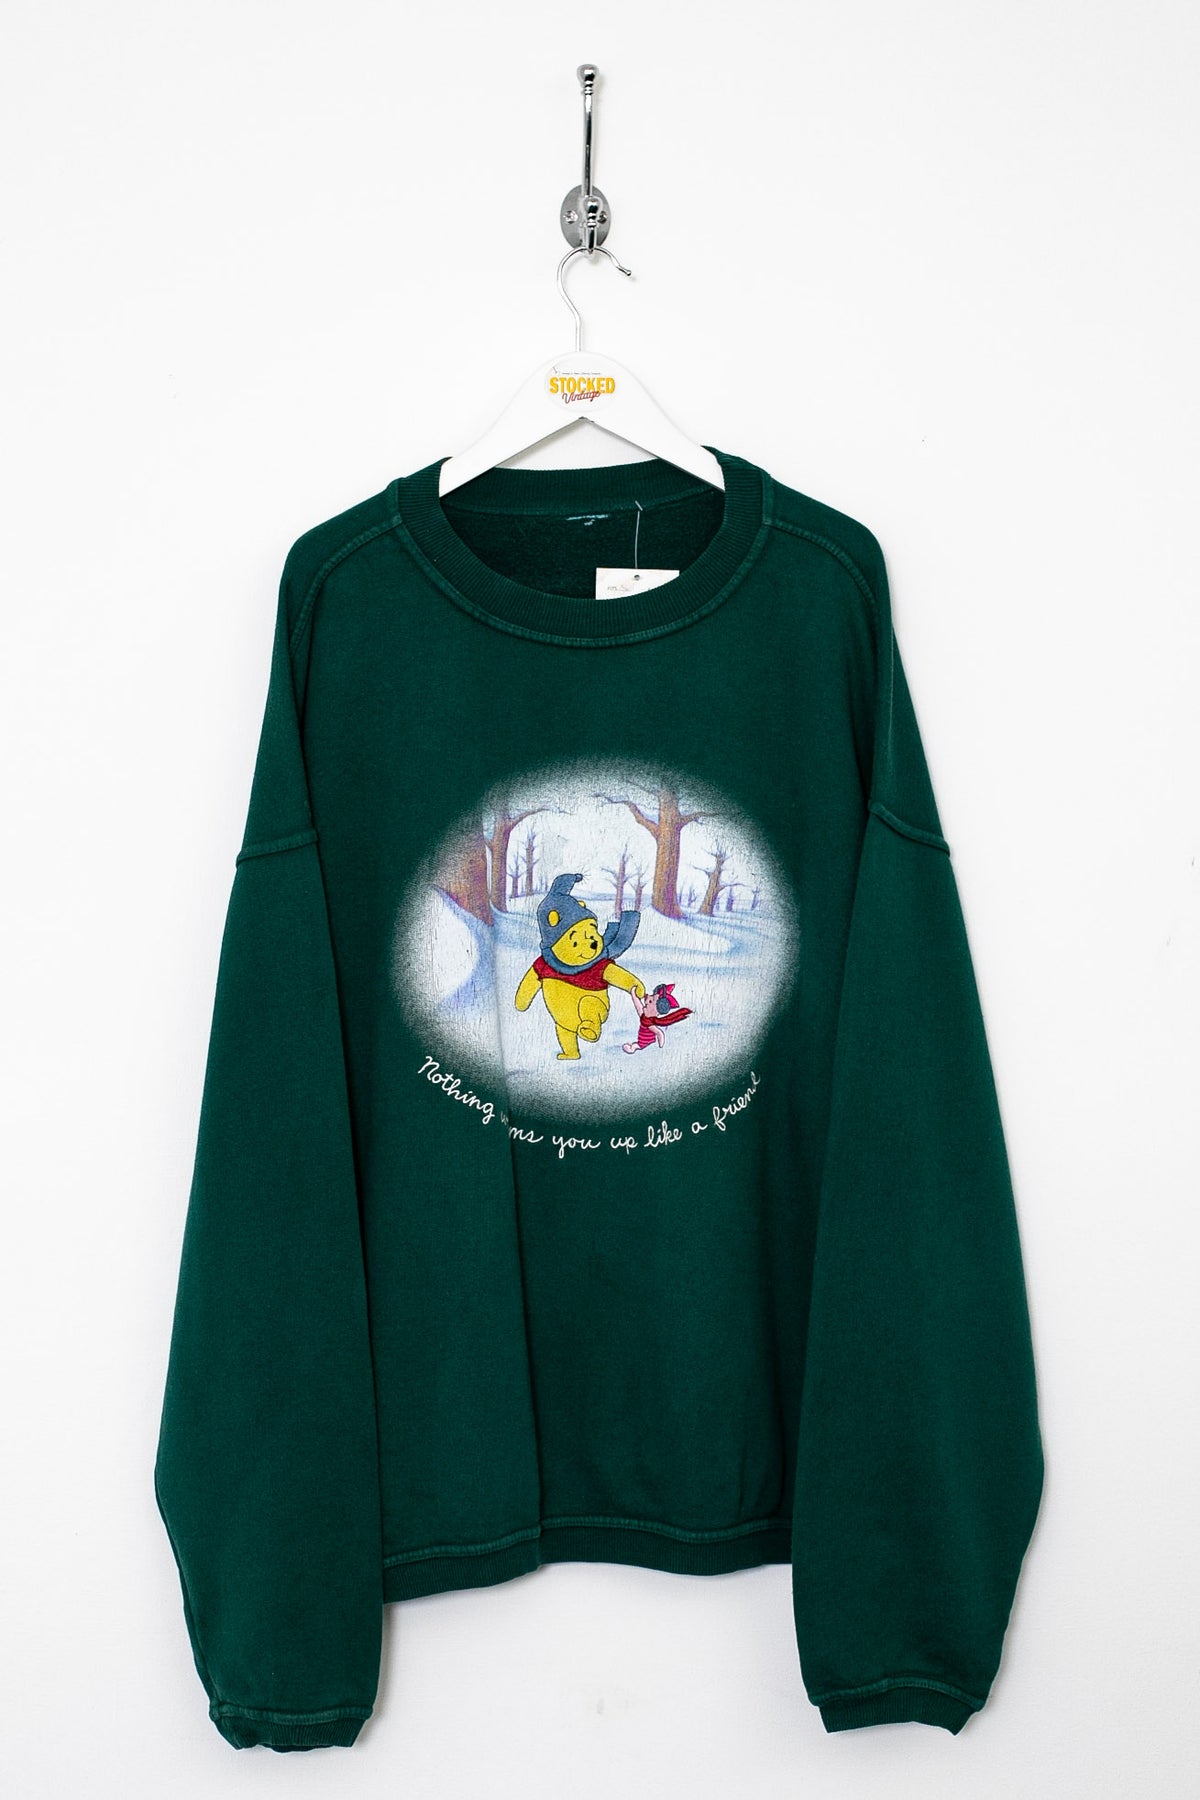 00s Winnie The Pooh Graphic Sweatshirt (XL)